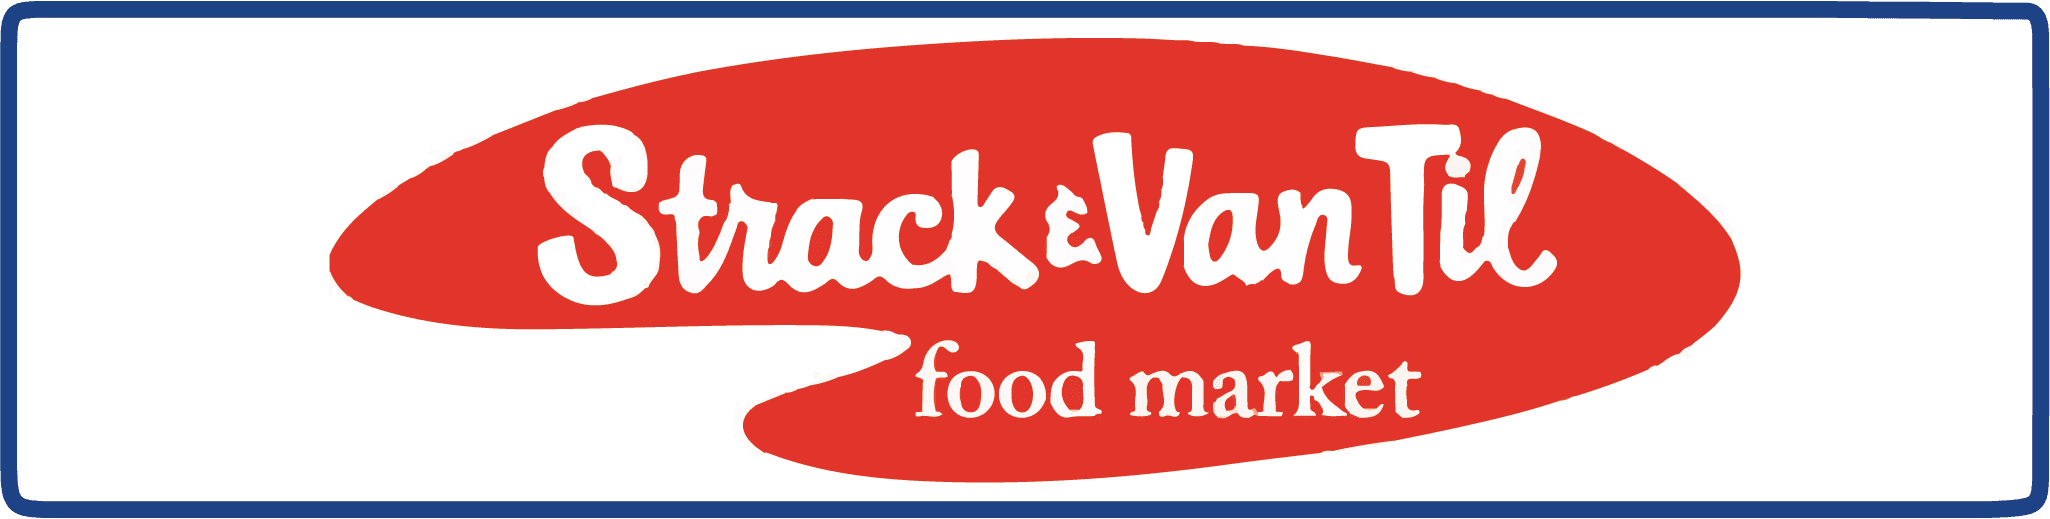 Strack & Van Till food market